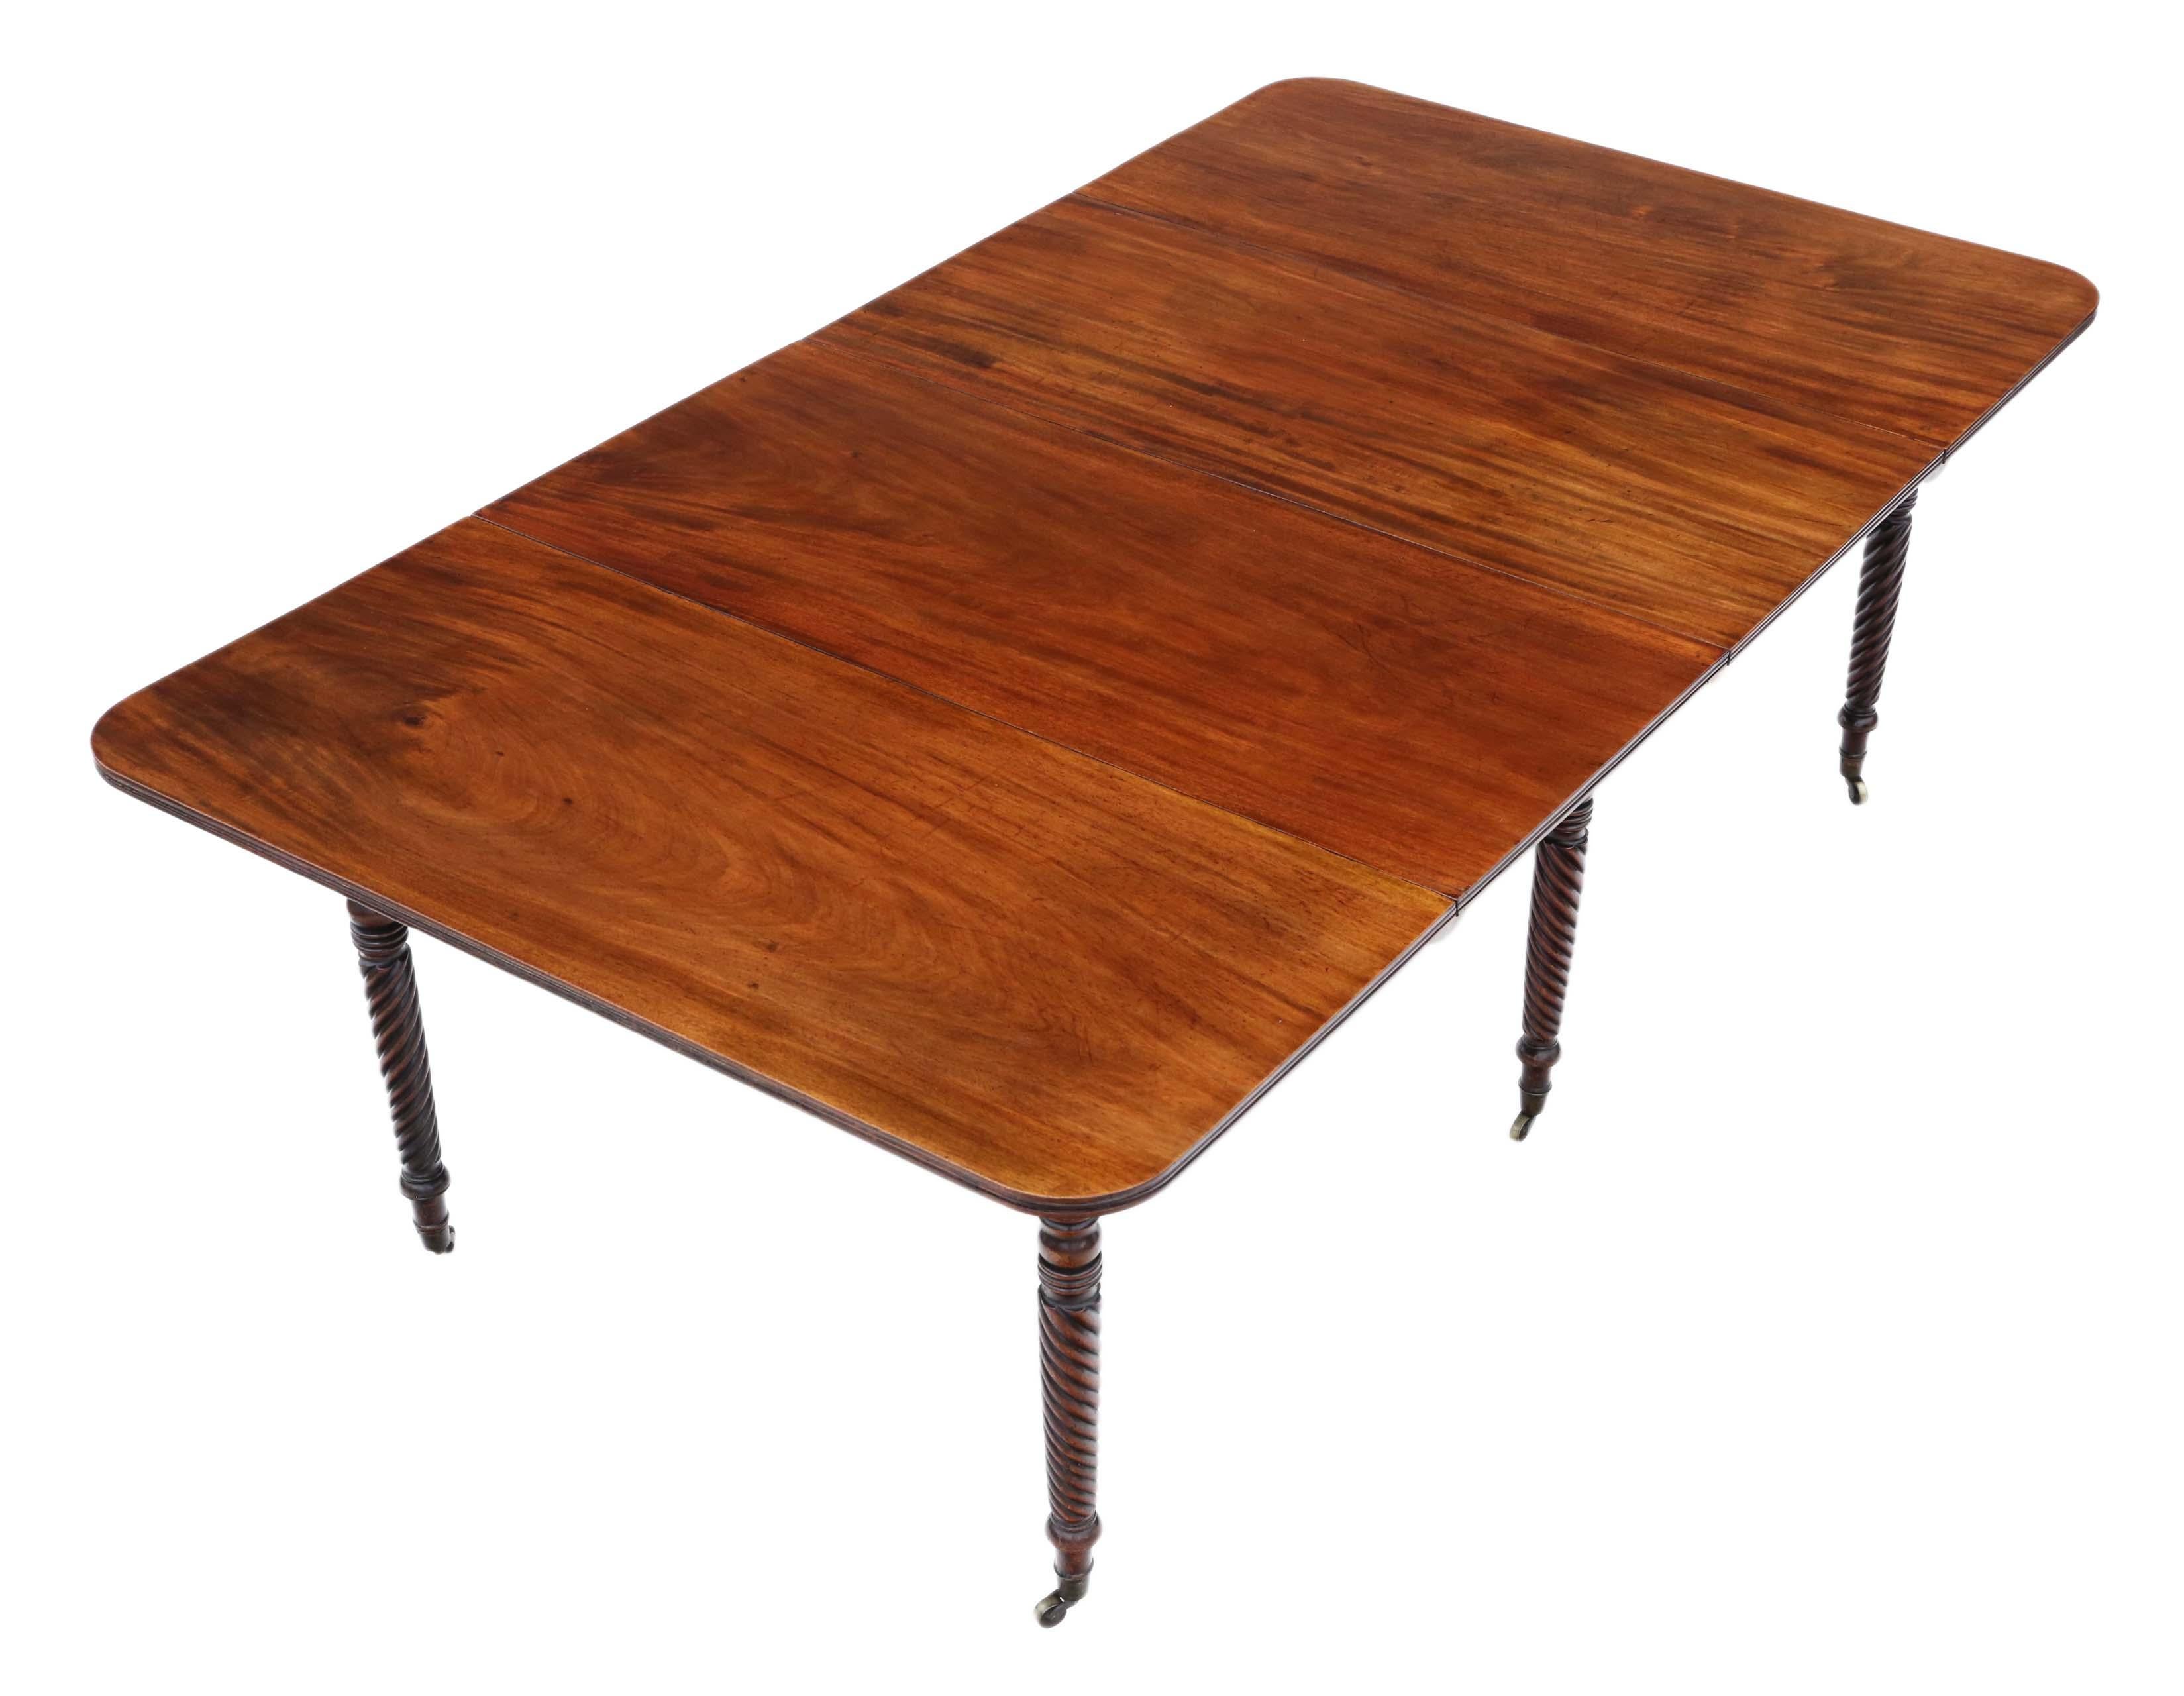 Antiker großer Mahagoni-Esstisch von hoher Qualität, 19. Jahrhundert, C1825, in der Art von Gillows. Zwei abnehmbare Blätter.

Der Tisch hat eine schöne, begehrte helle, sanfte Farbe, mit schlanken, atemberaubenden Trafalgar-Twist-Beinen und steht